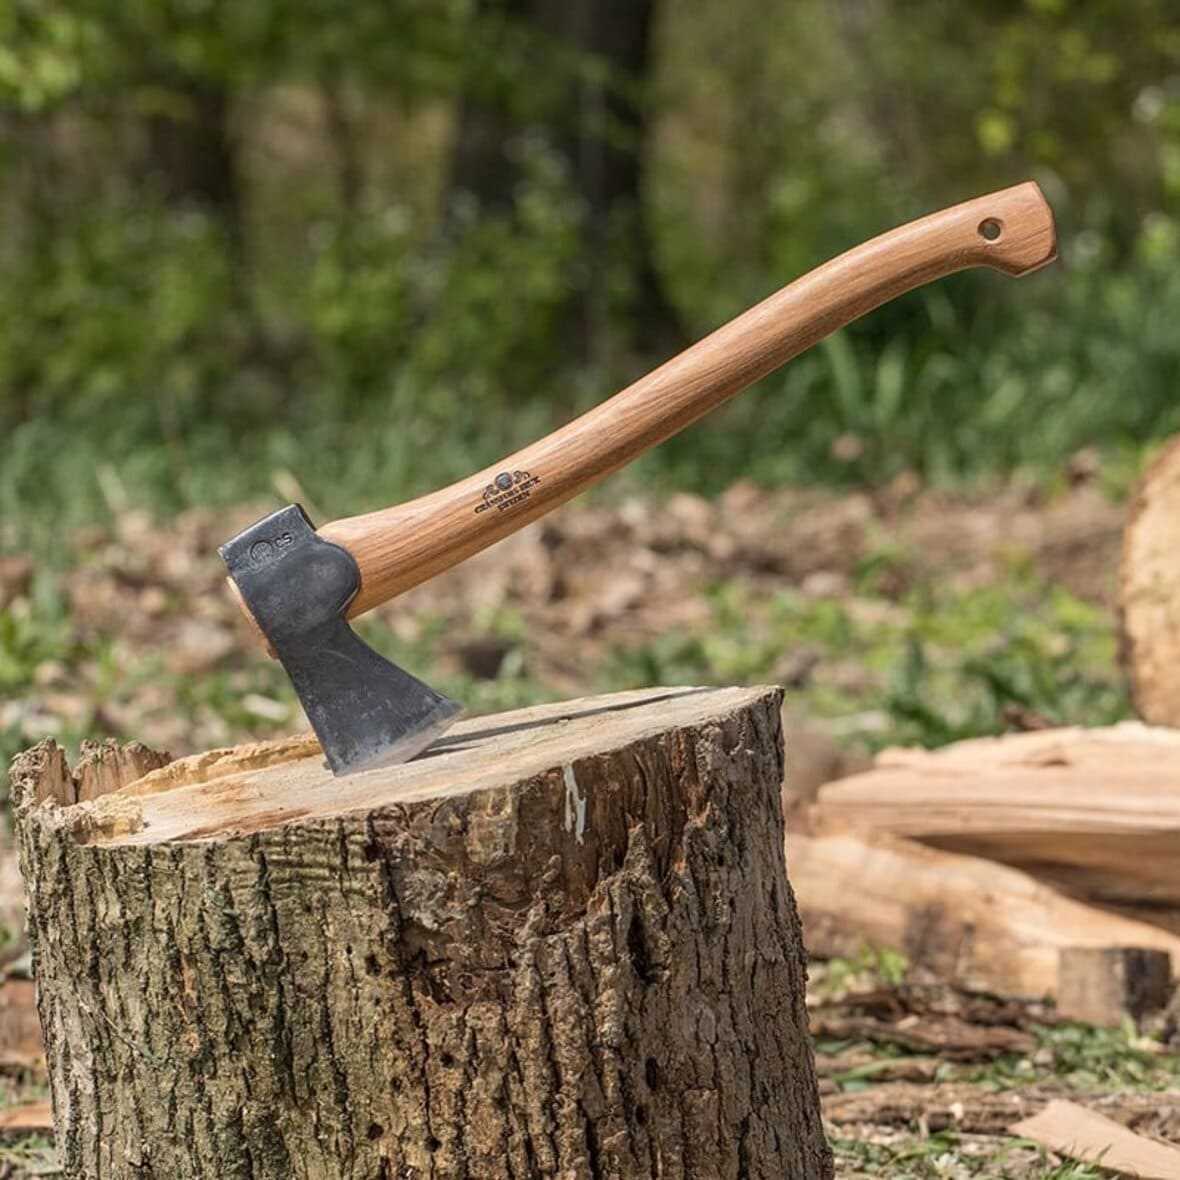 Топор: выбираем подходящий для рубки дров и обработки дерева